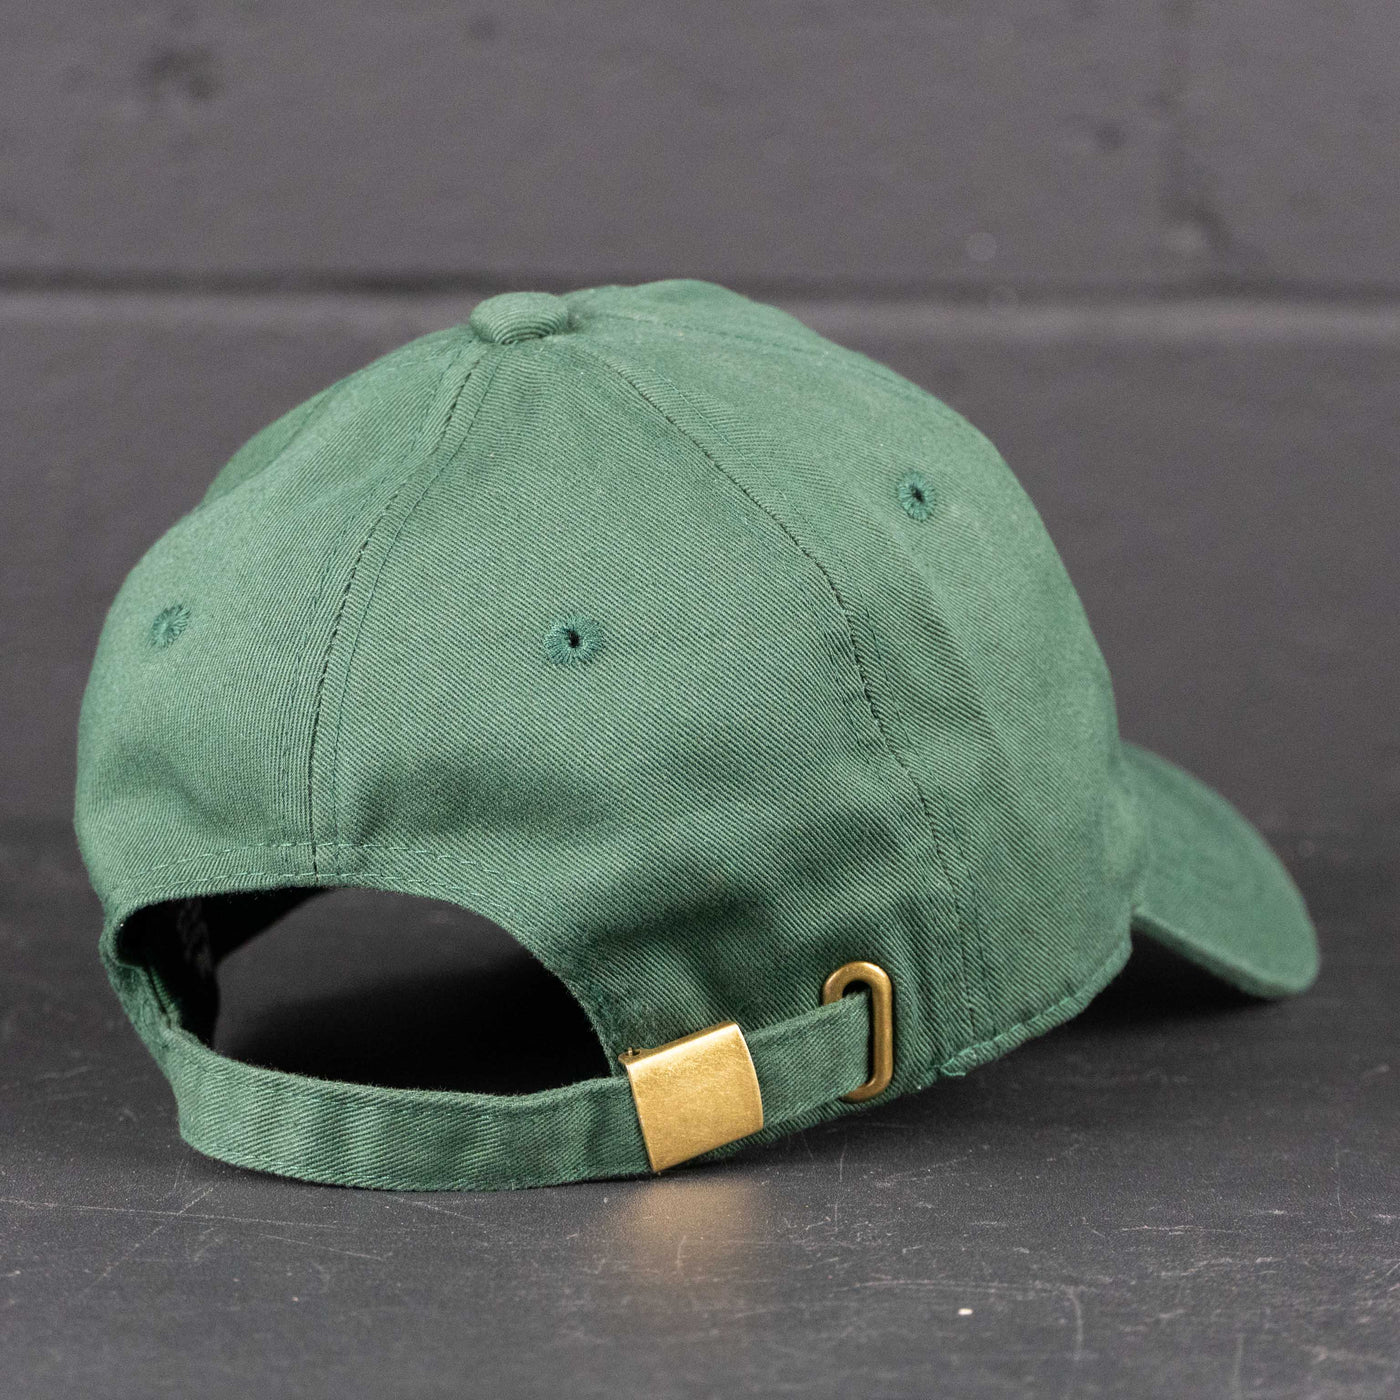 Zebrasclub baseball cap hunter green back